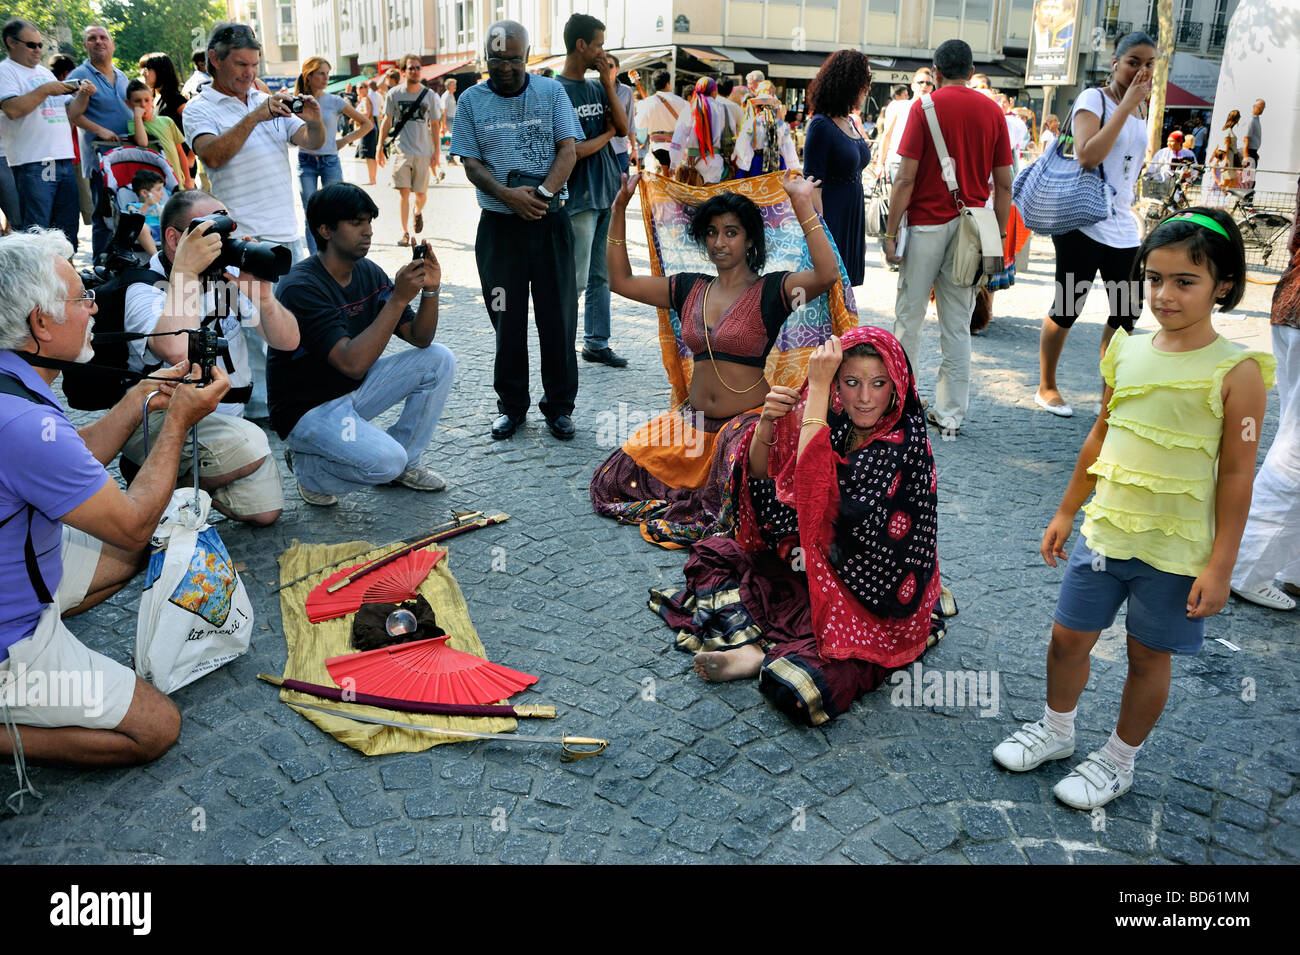 Paris France, foule de touristes, devant le Musée George Pompidou, regardant danseuse indienne, interprète de rue sur la Plaza, enfant public Banque D'Images